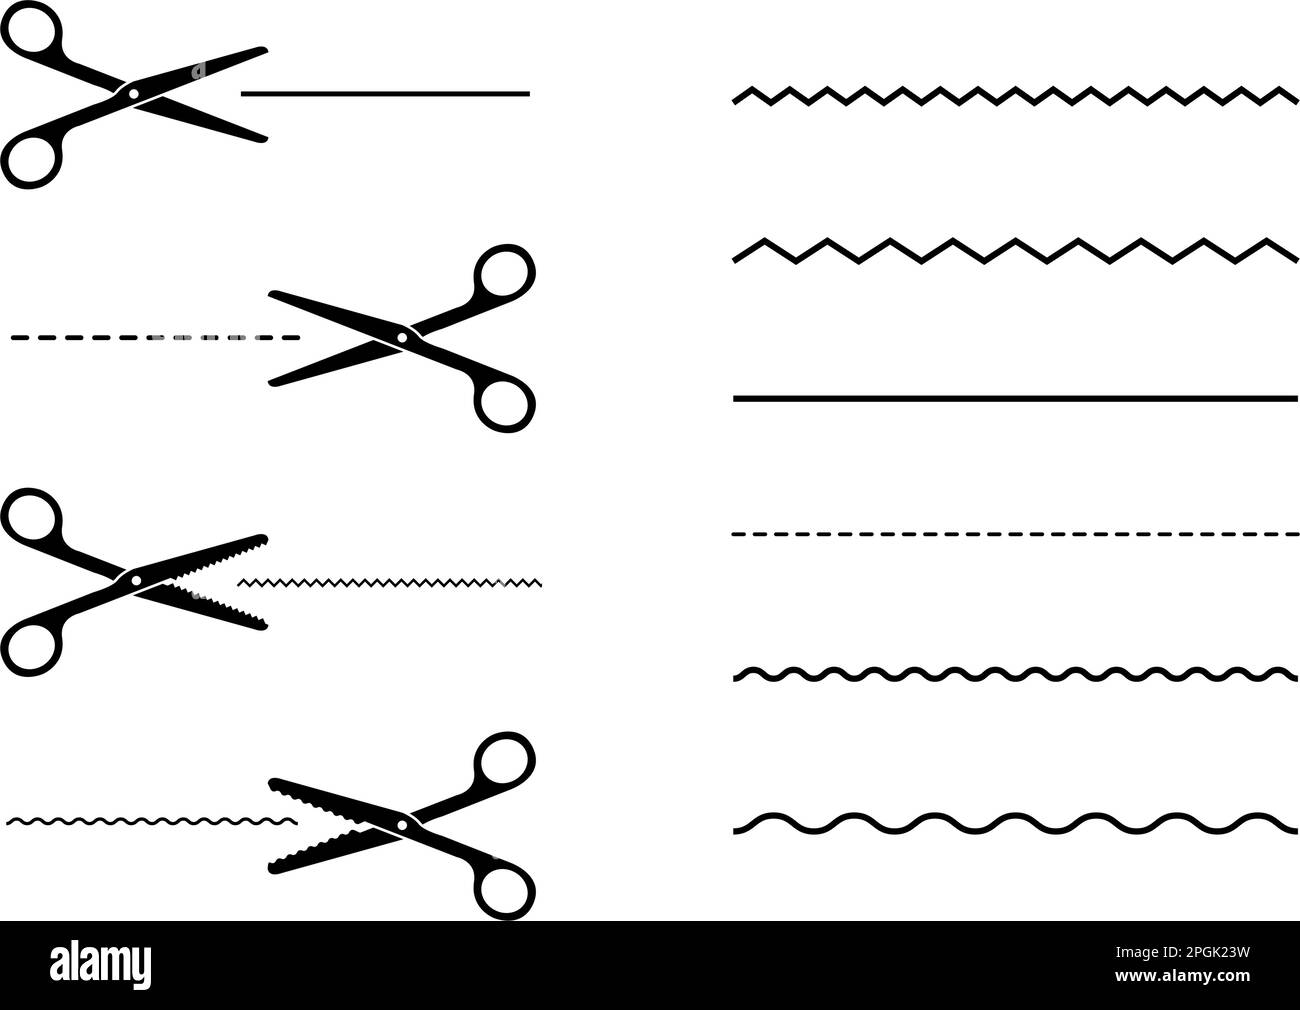 Symbolsatz mit schwarzen Scheren mit verschiedenen Schnittlinien. Abbildung eines flachen Vektors Stock Vektor